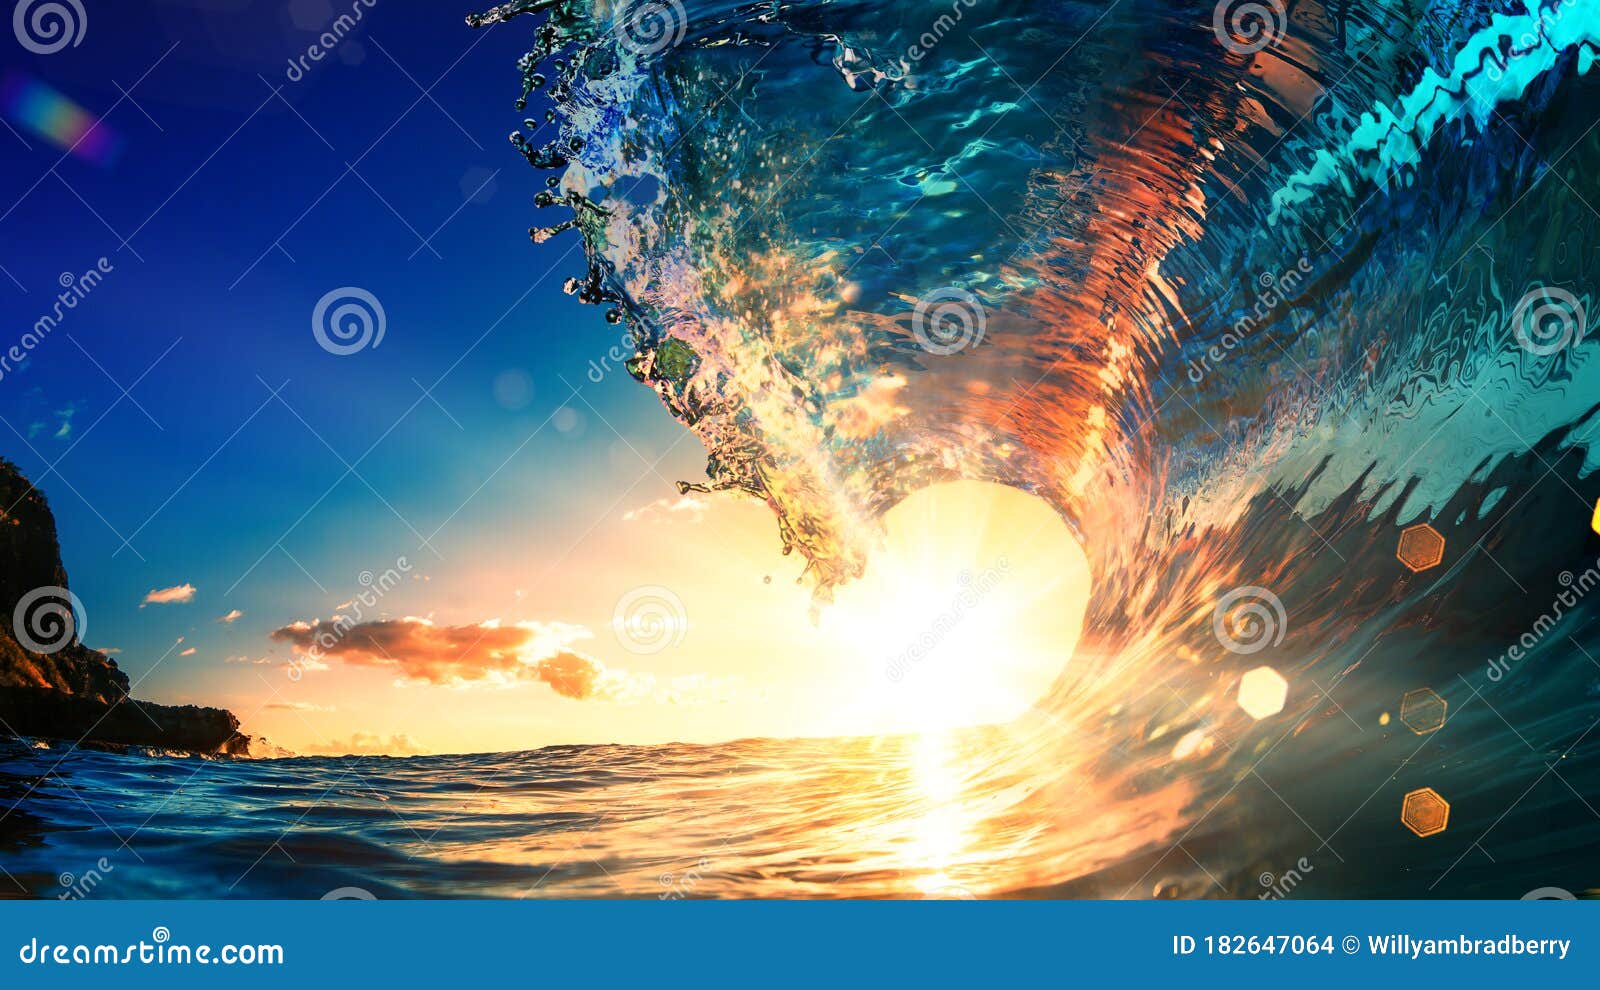 sunset ocean wave surfing crest